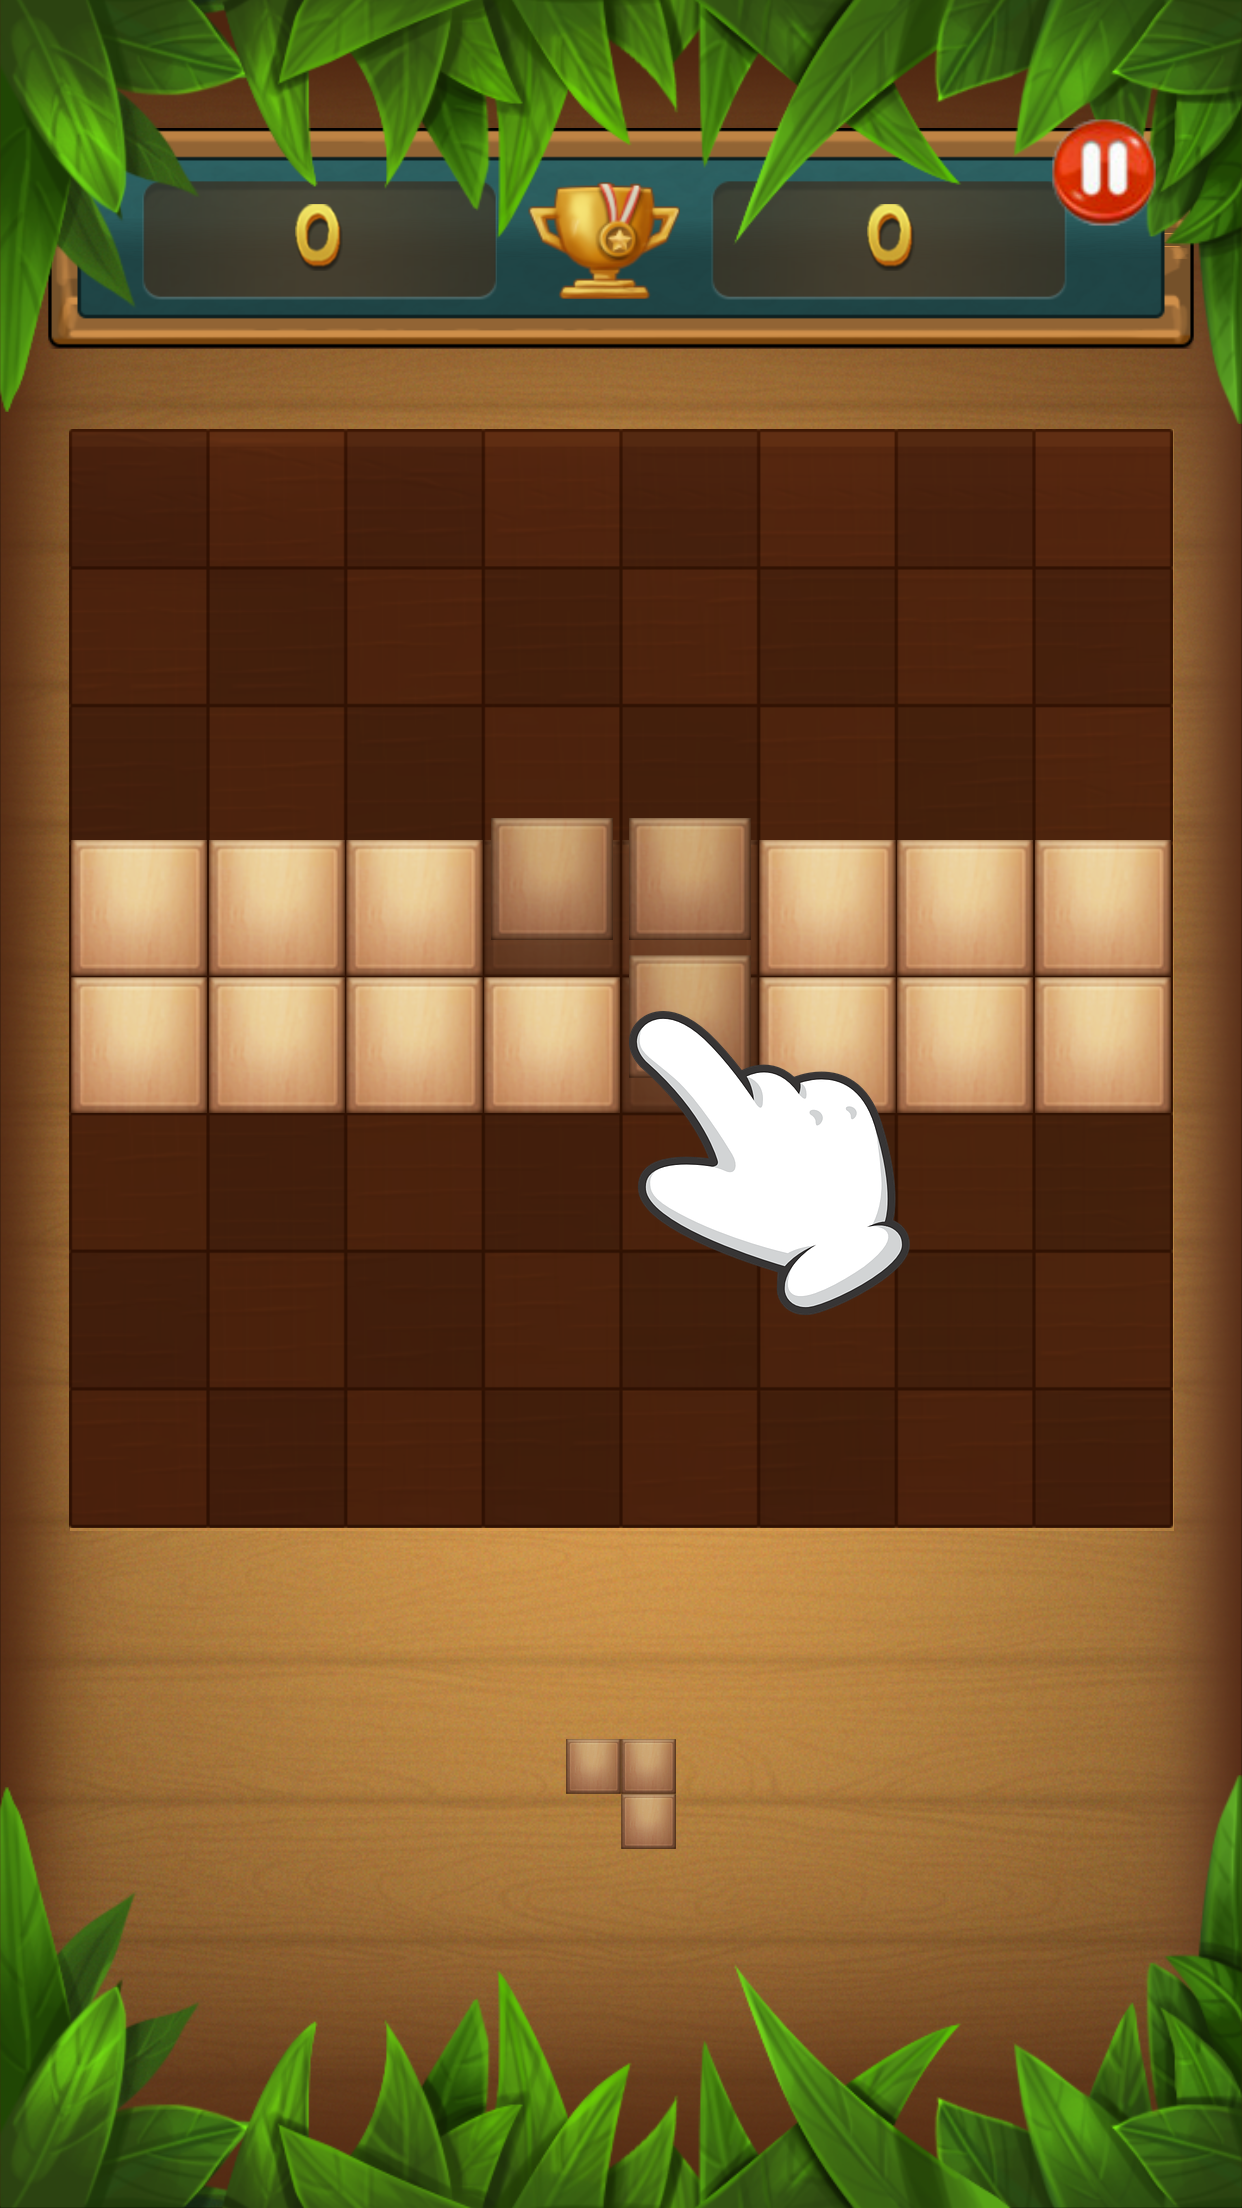 Screenshot 1 of Rompecabezas de bloques de madera 1.1.18